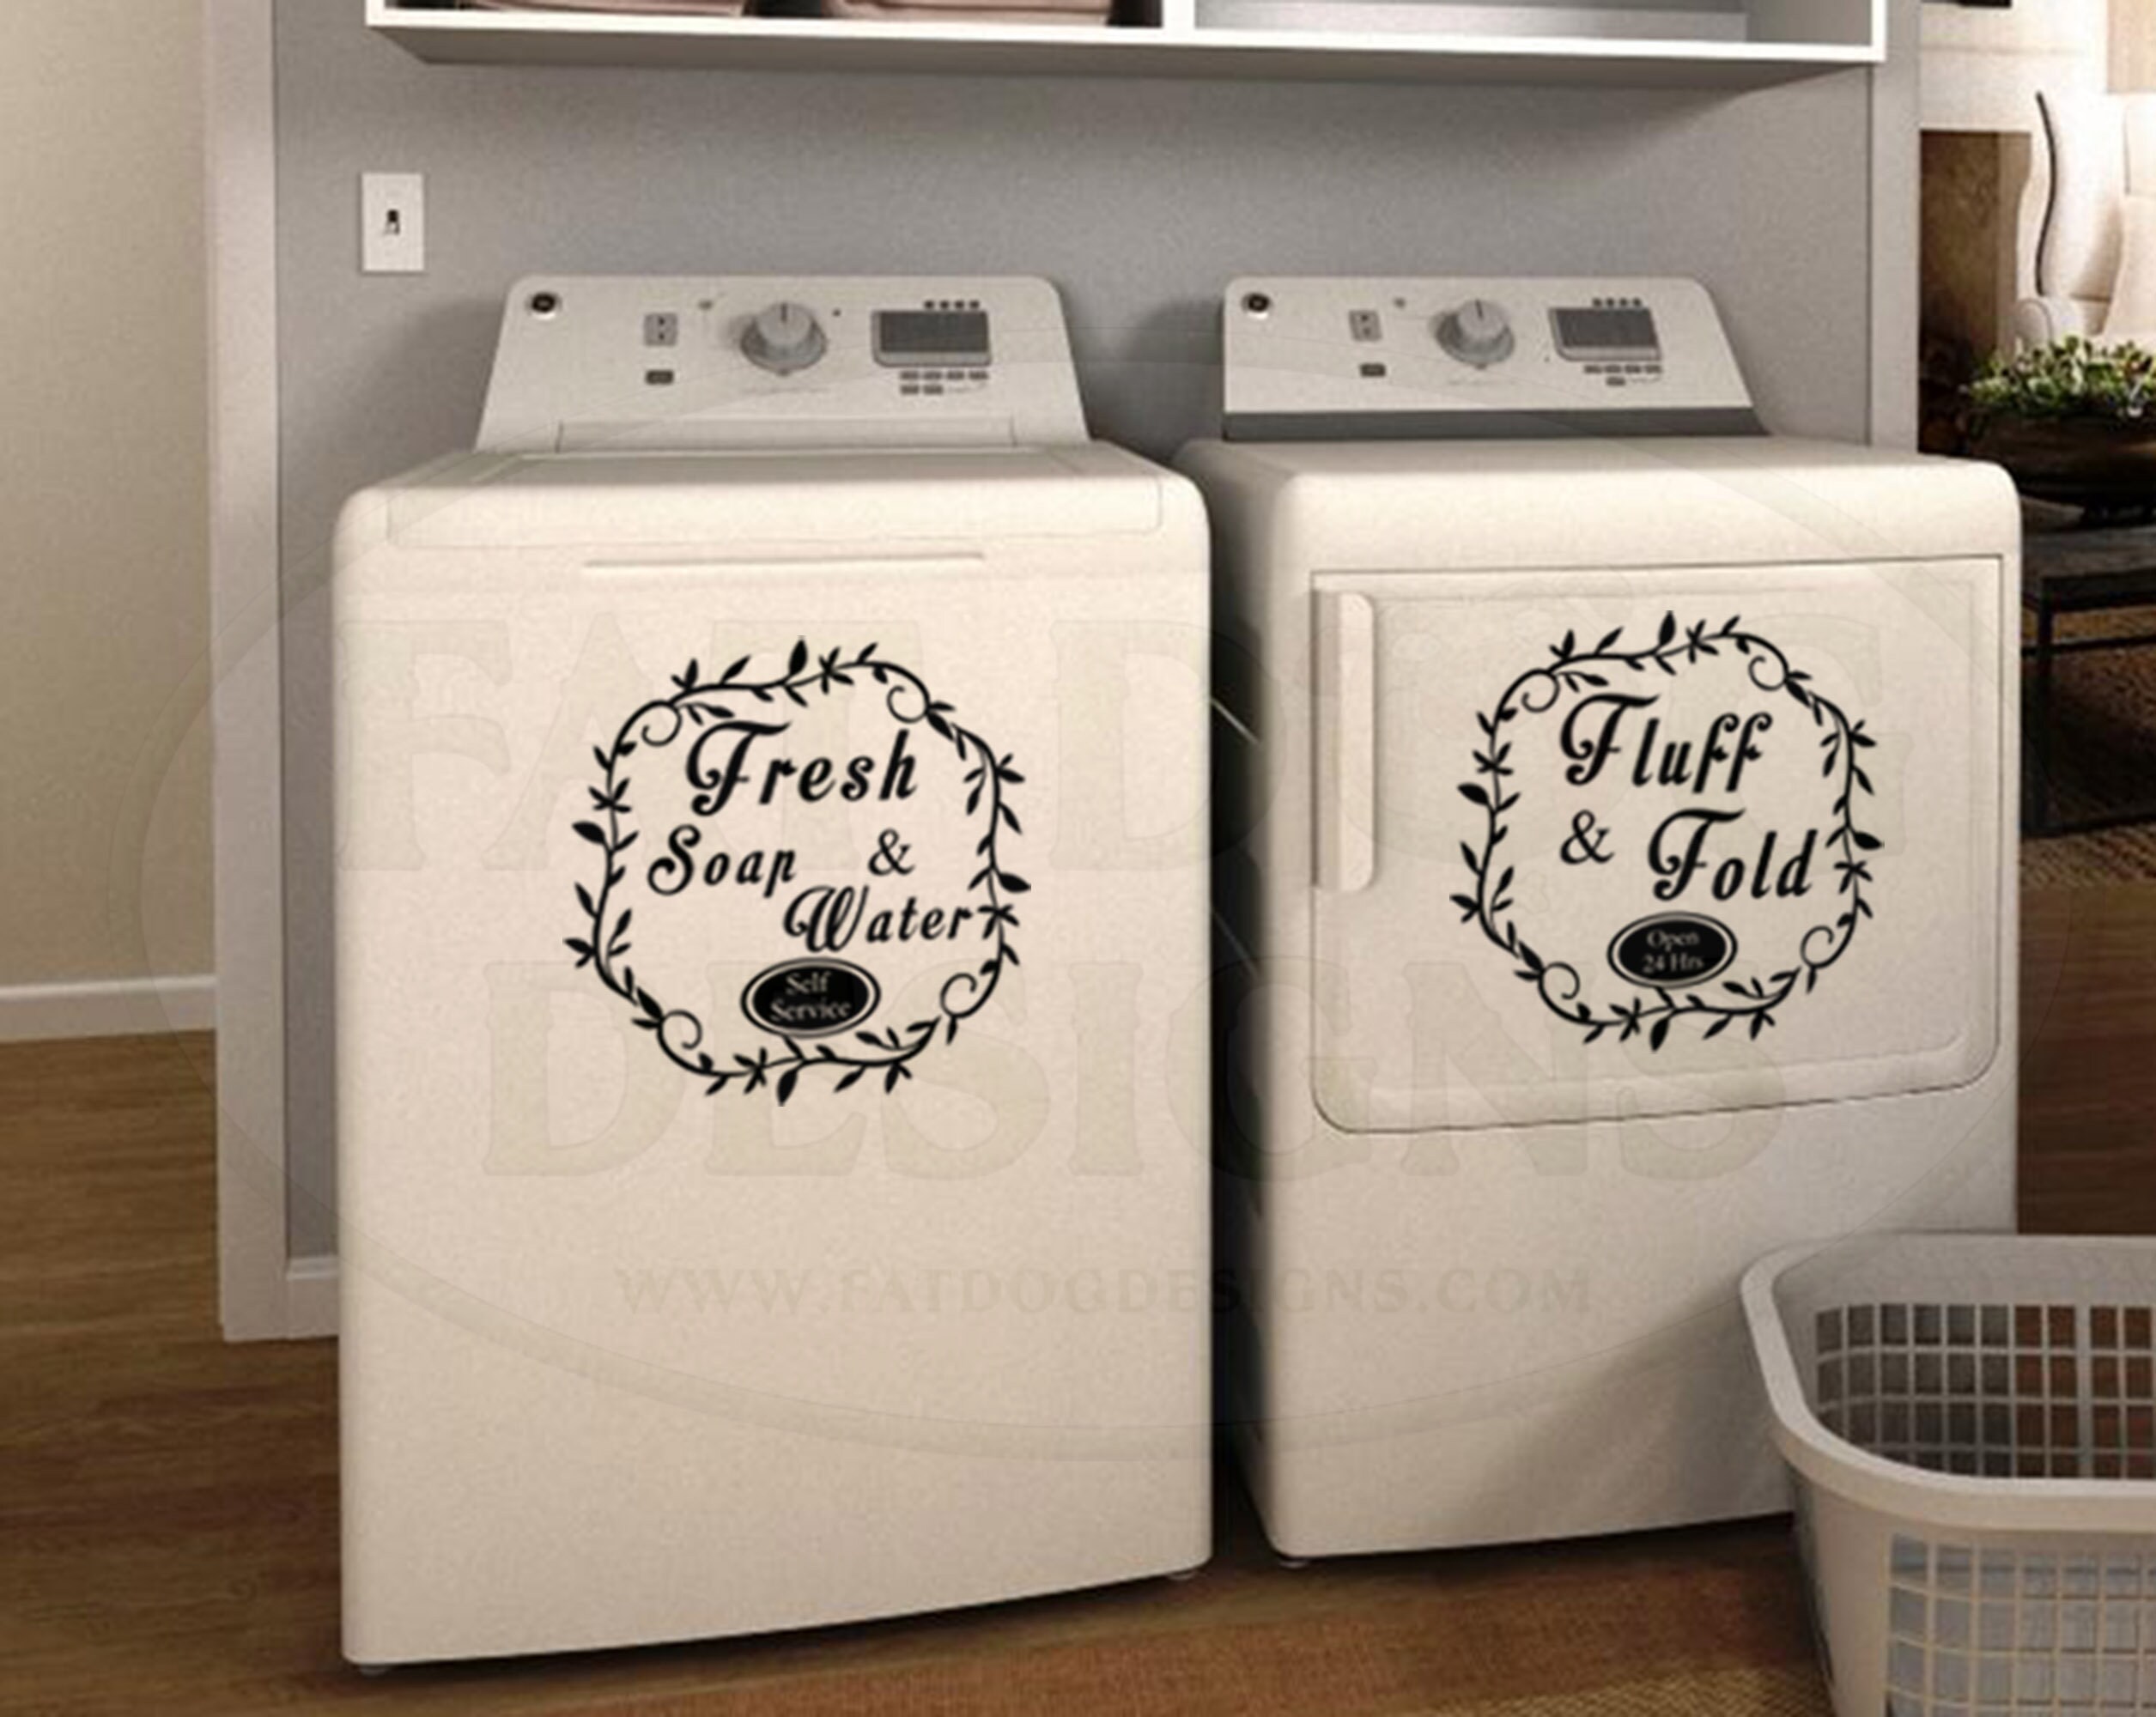 Diseño en lavadoras  Vinilos, Disenos de unas, Lavadora